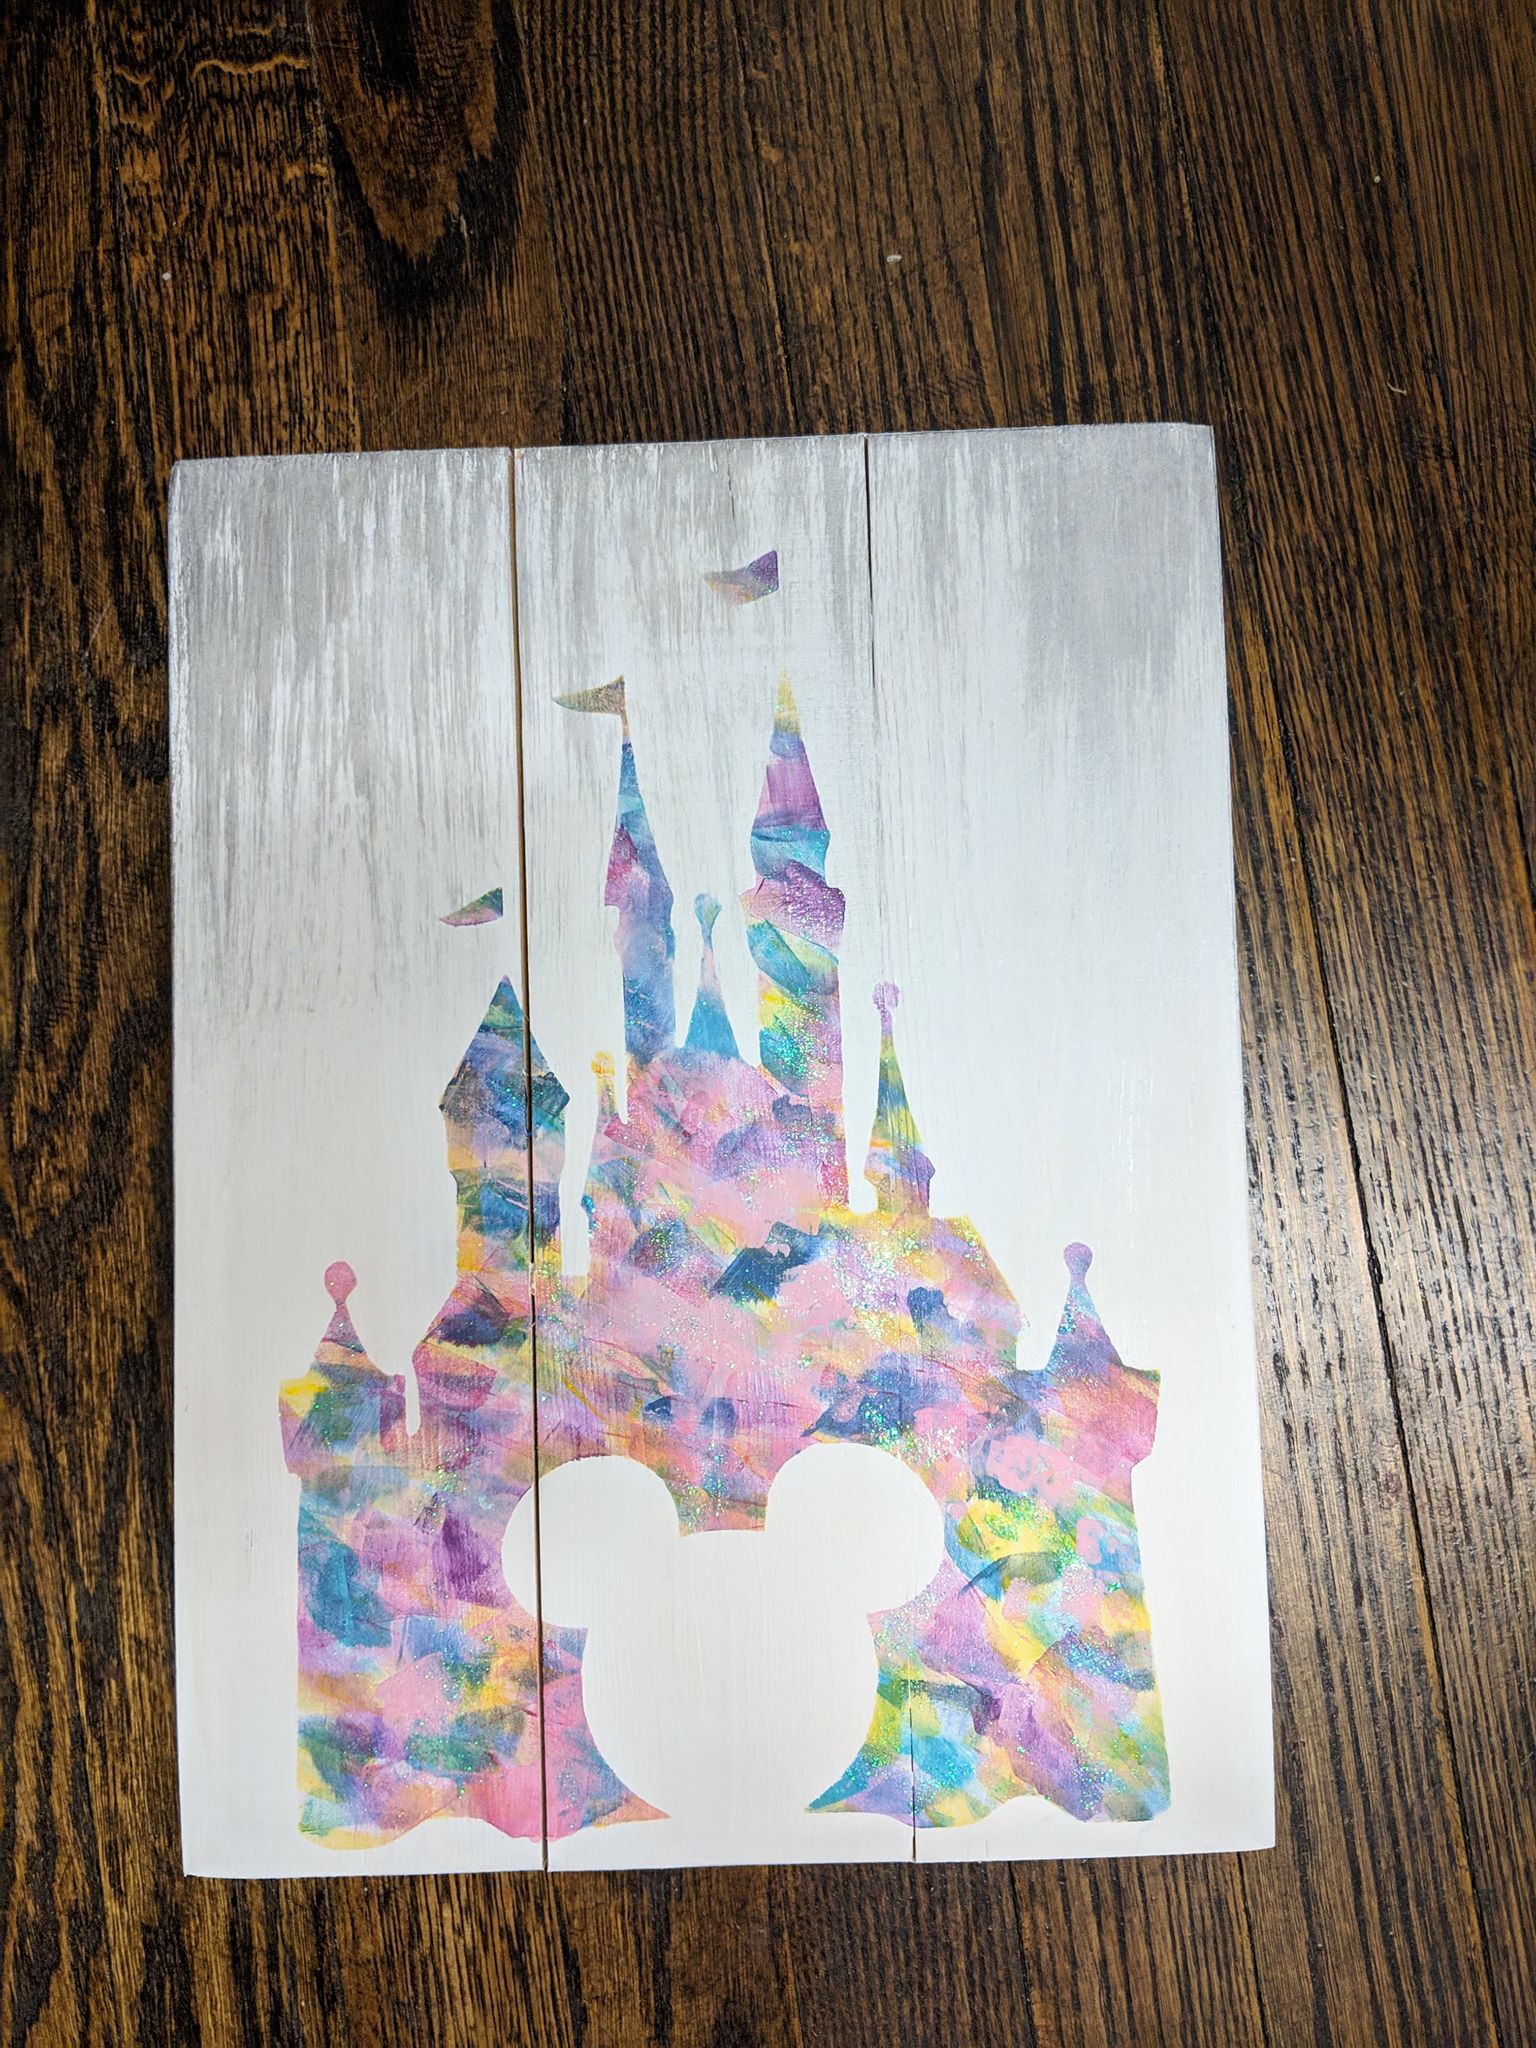 Diz castle with Mouse cutout